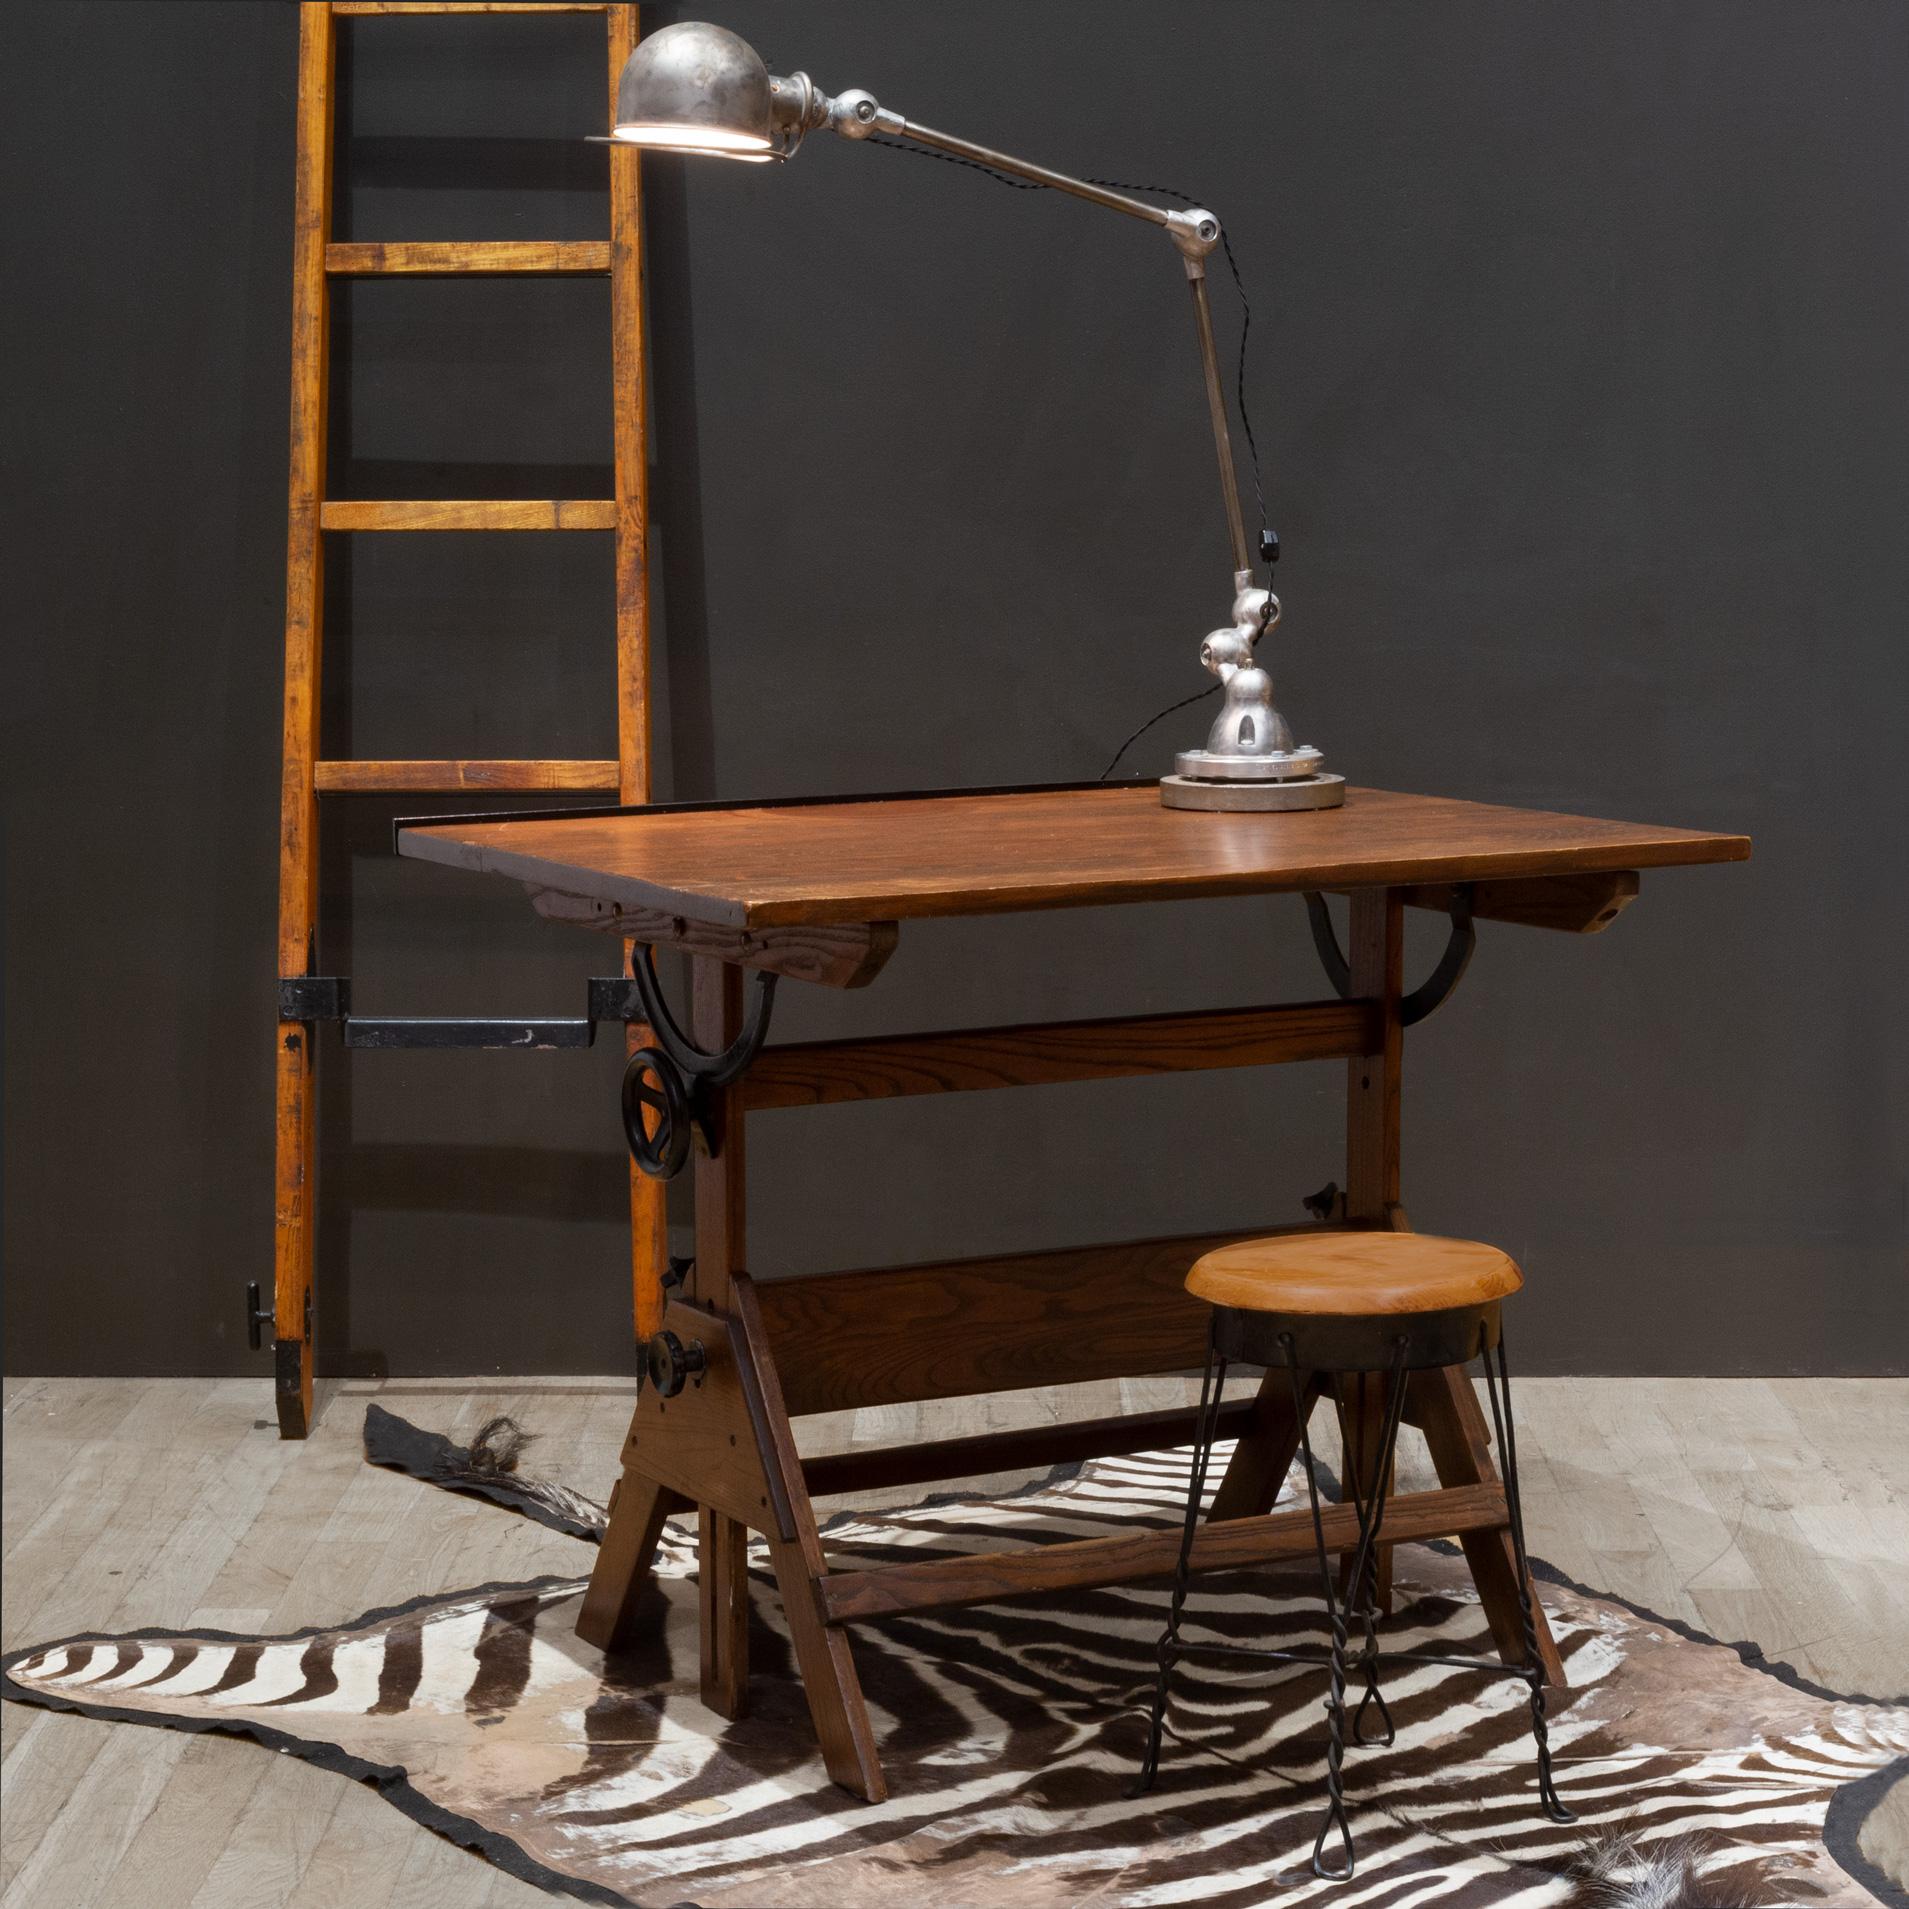 CIRCA

Un tavolo da disegno industriale in legno completamente regolabile con un ripiano in ghisa, manopole e staffe in ghisa. Il tavolo può essere utilizzato come tavolo da pranzo alto, scrivania o tavolo da disegno. Il piano è girevole in